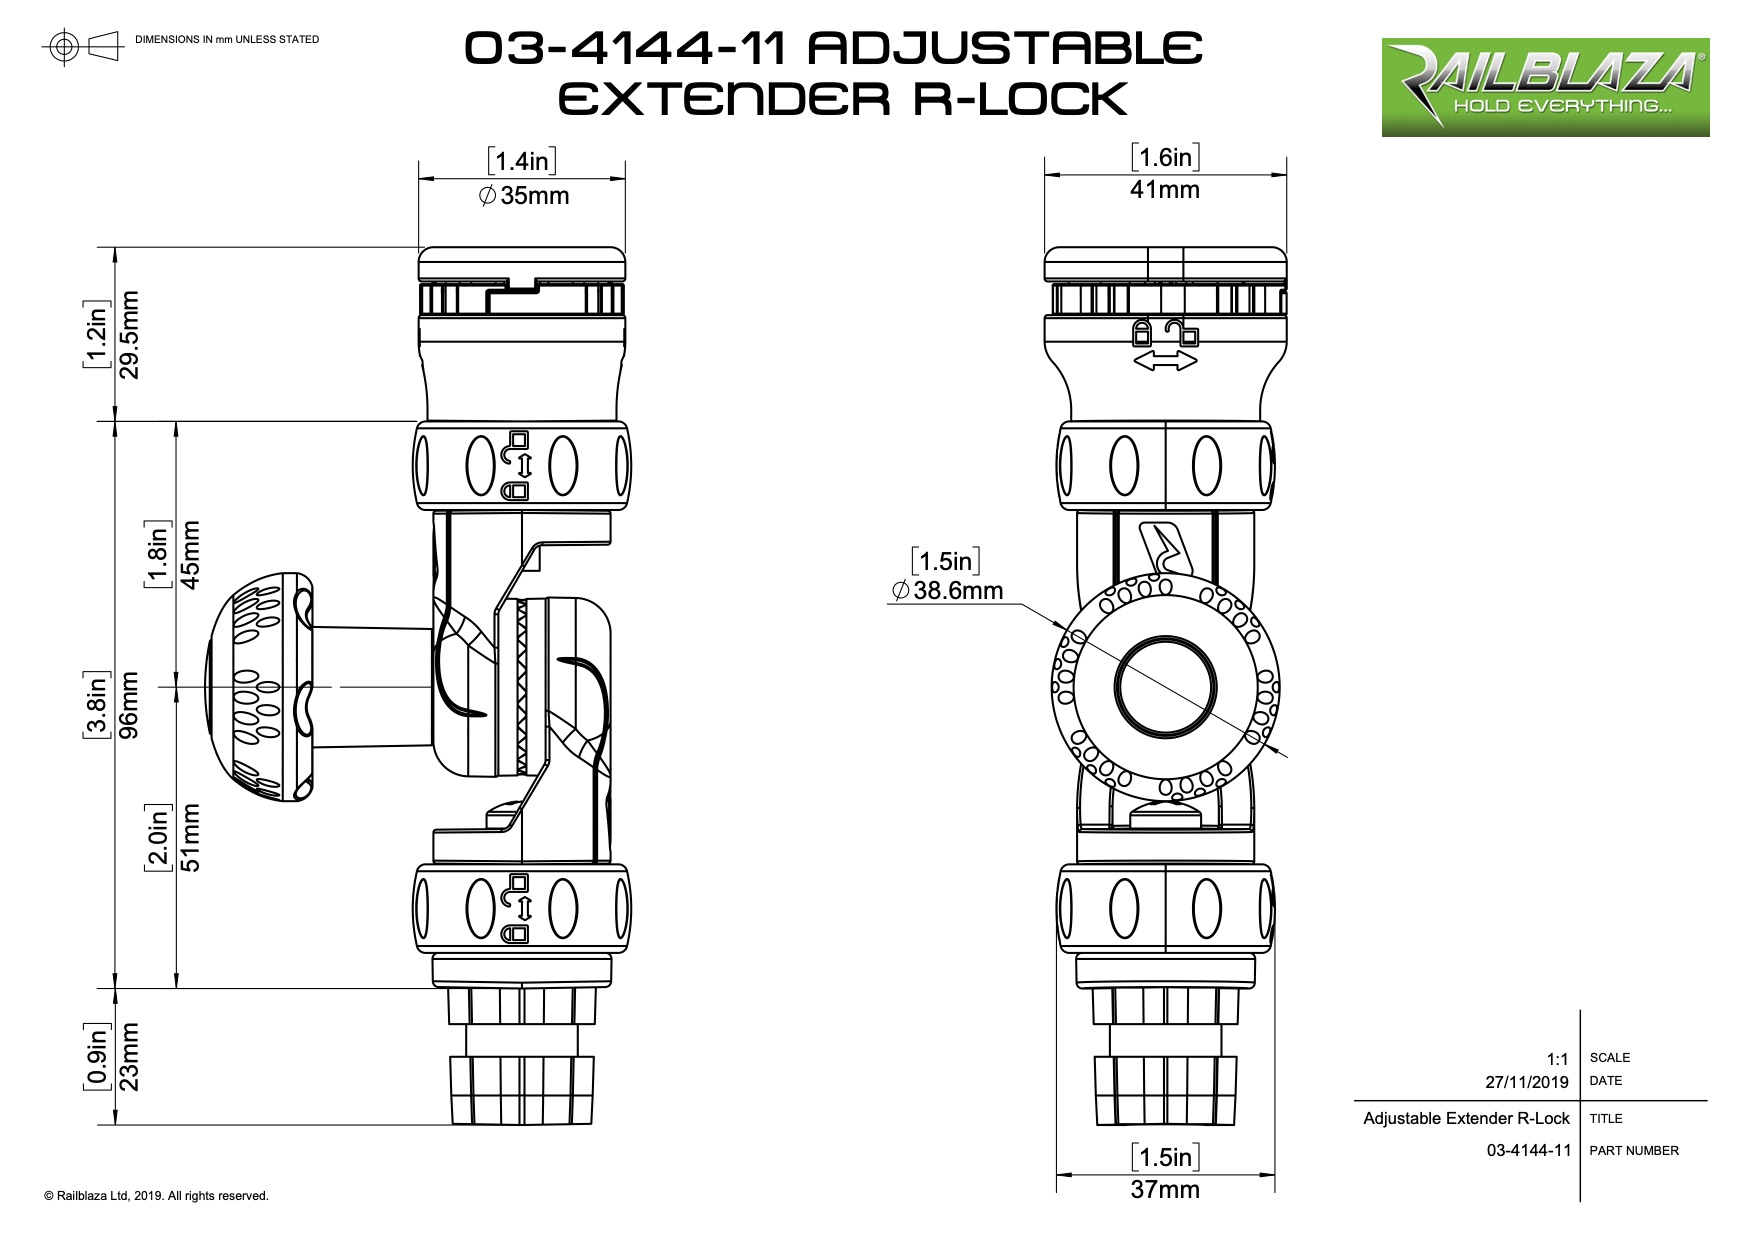 Adjustable-Extender-R-Lock-03-4144-11-Adjustable-Extender-R-Lock-Dimensions-2296_114744.jpg